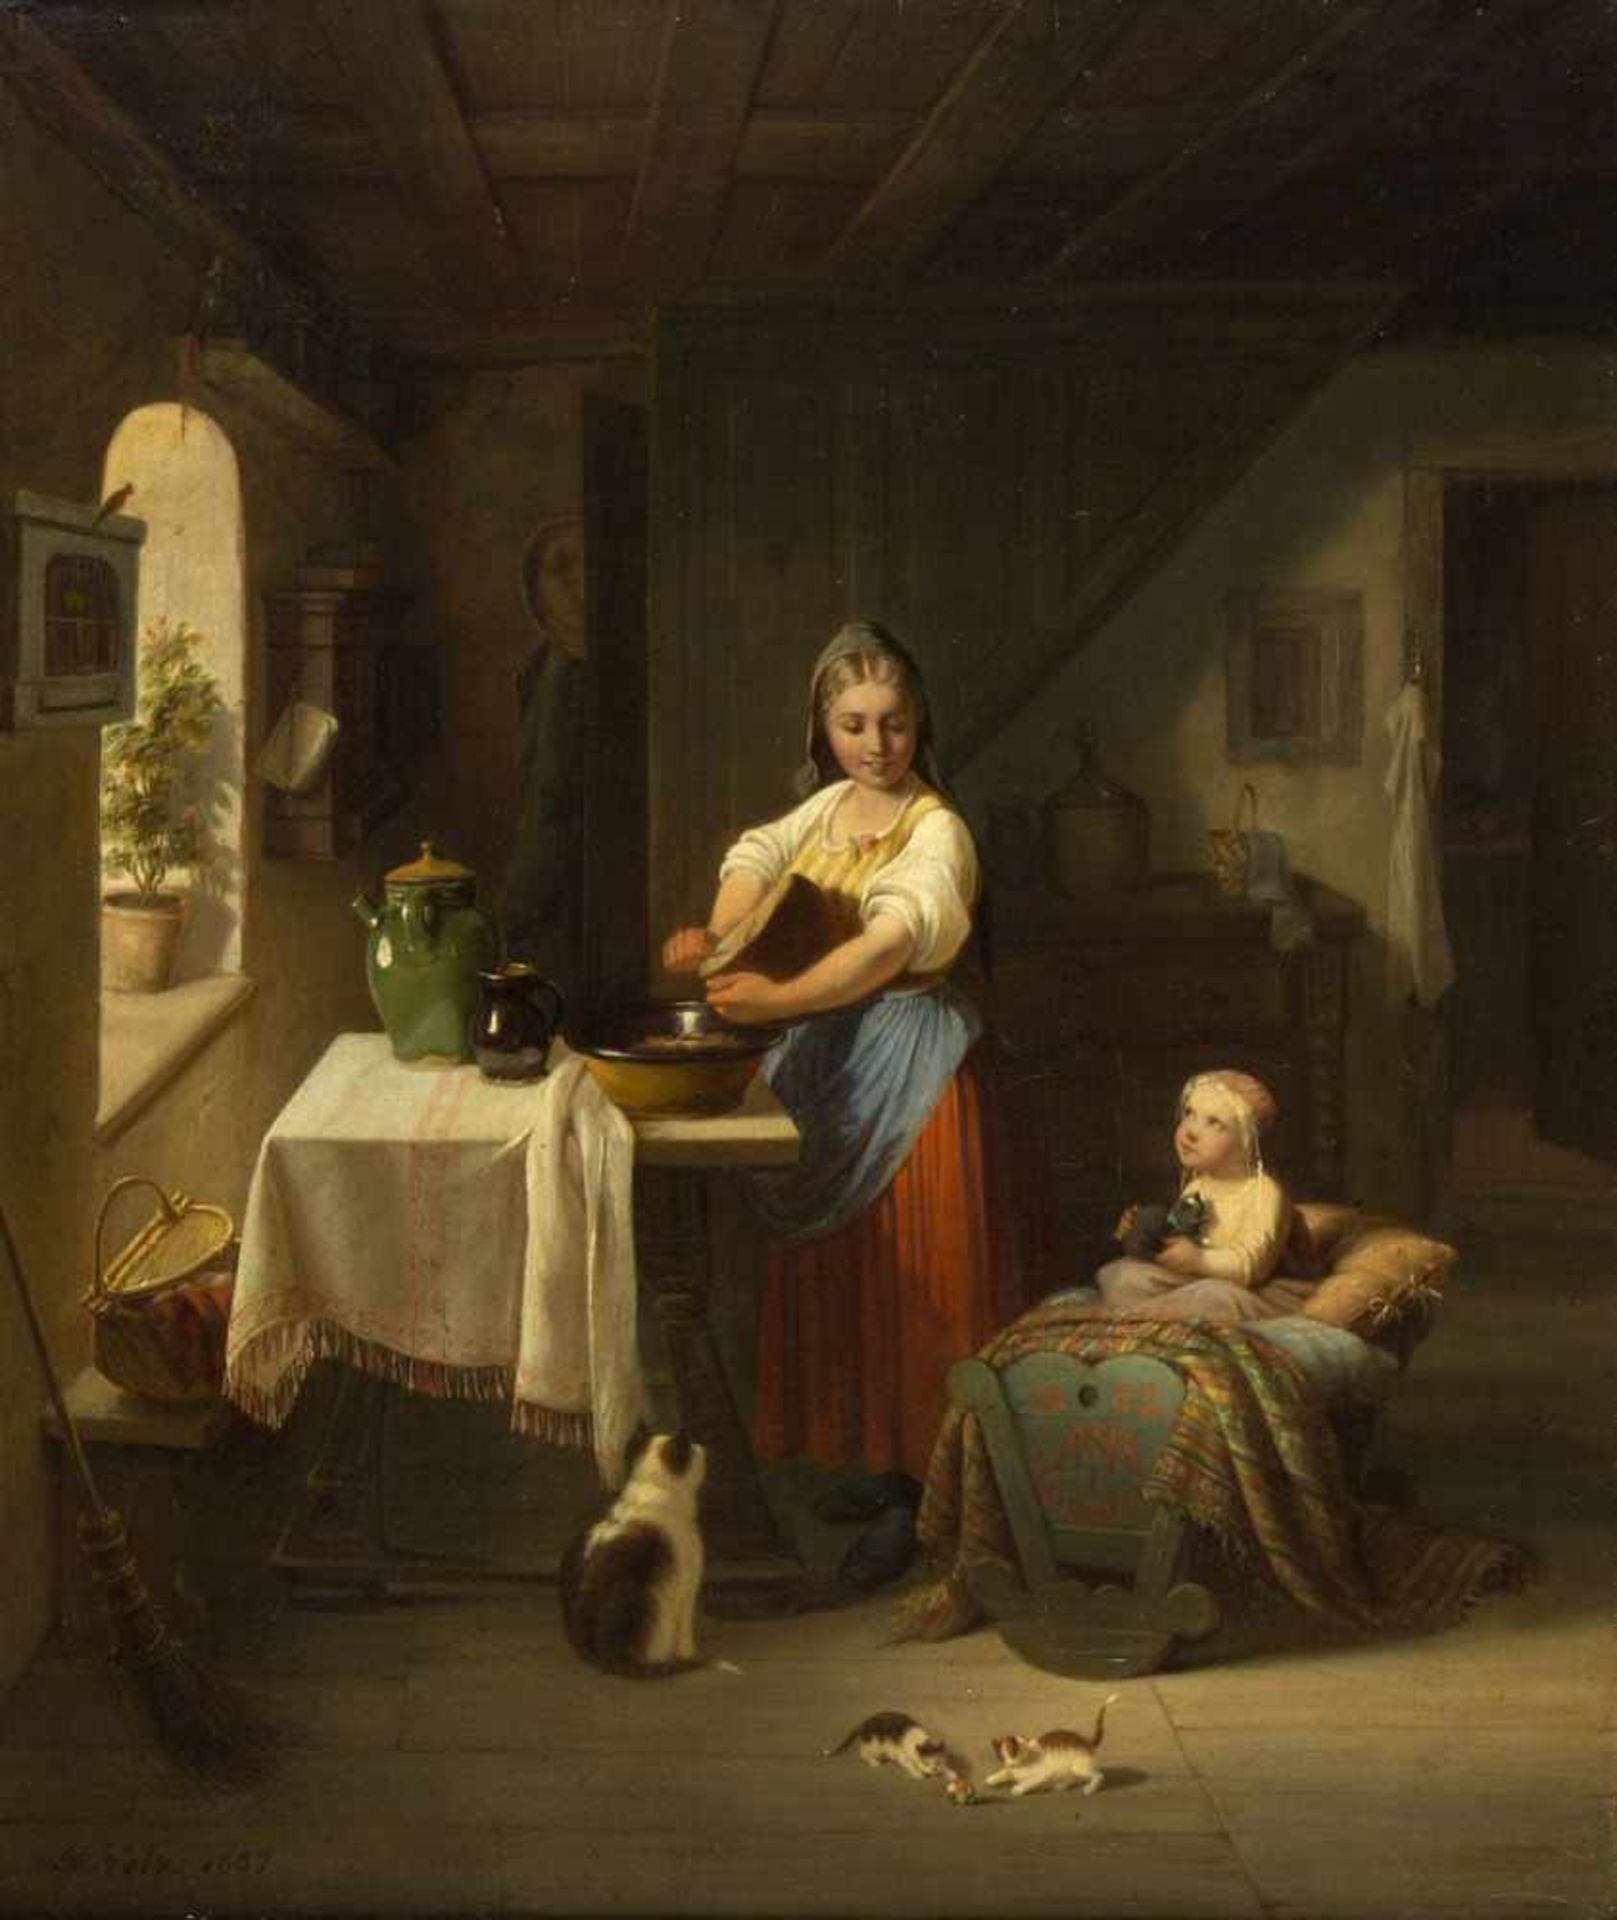 Volz, Hermann. 1814 - Biberach an der Riss - 1894Brot schneidende Bäuerin in der Stube mit ihrem